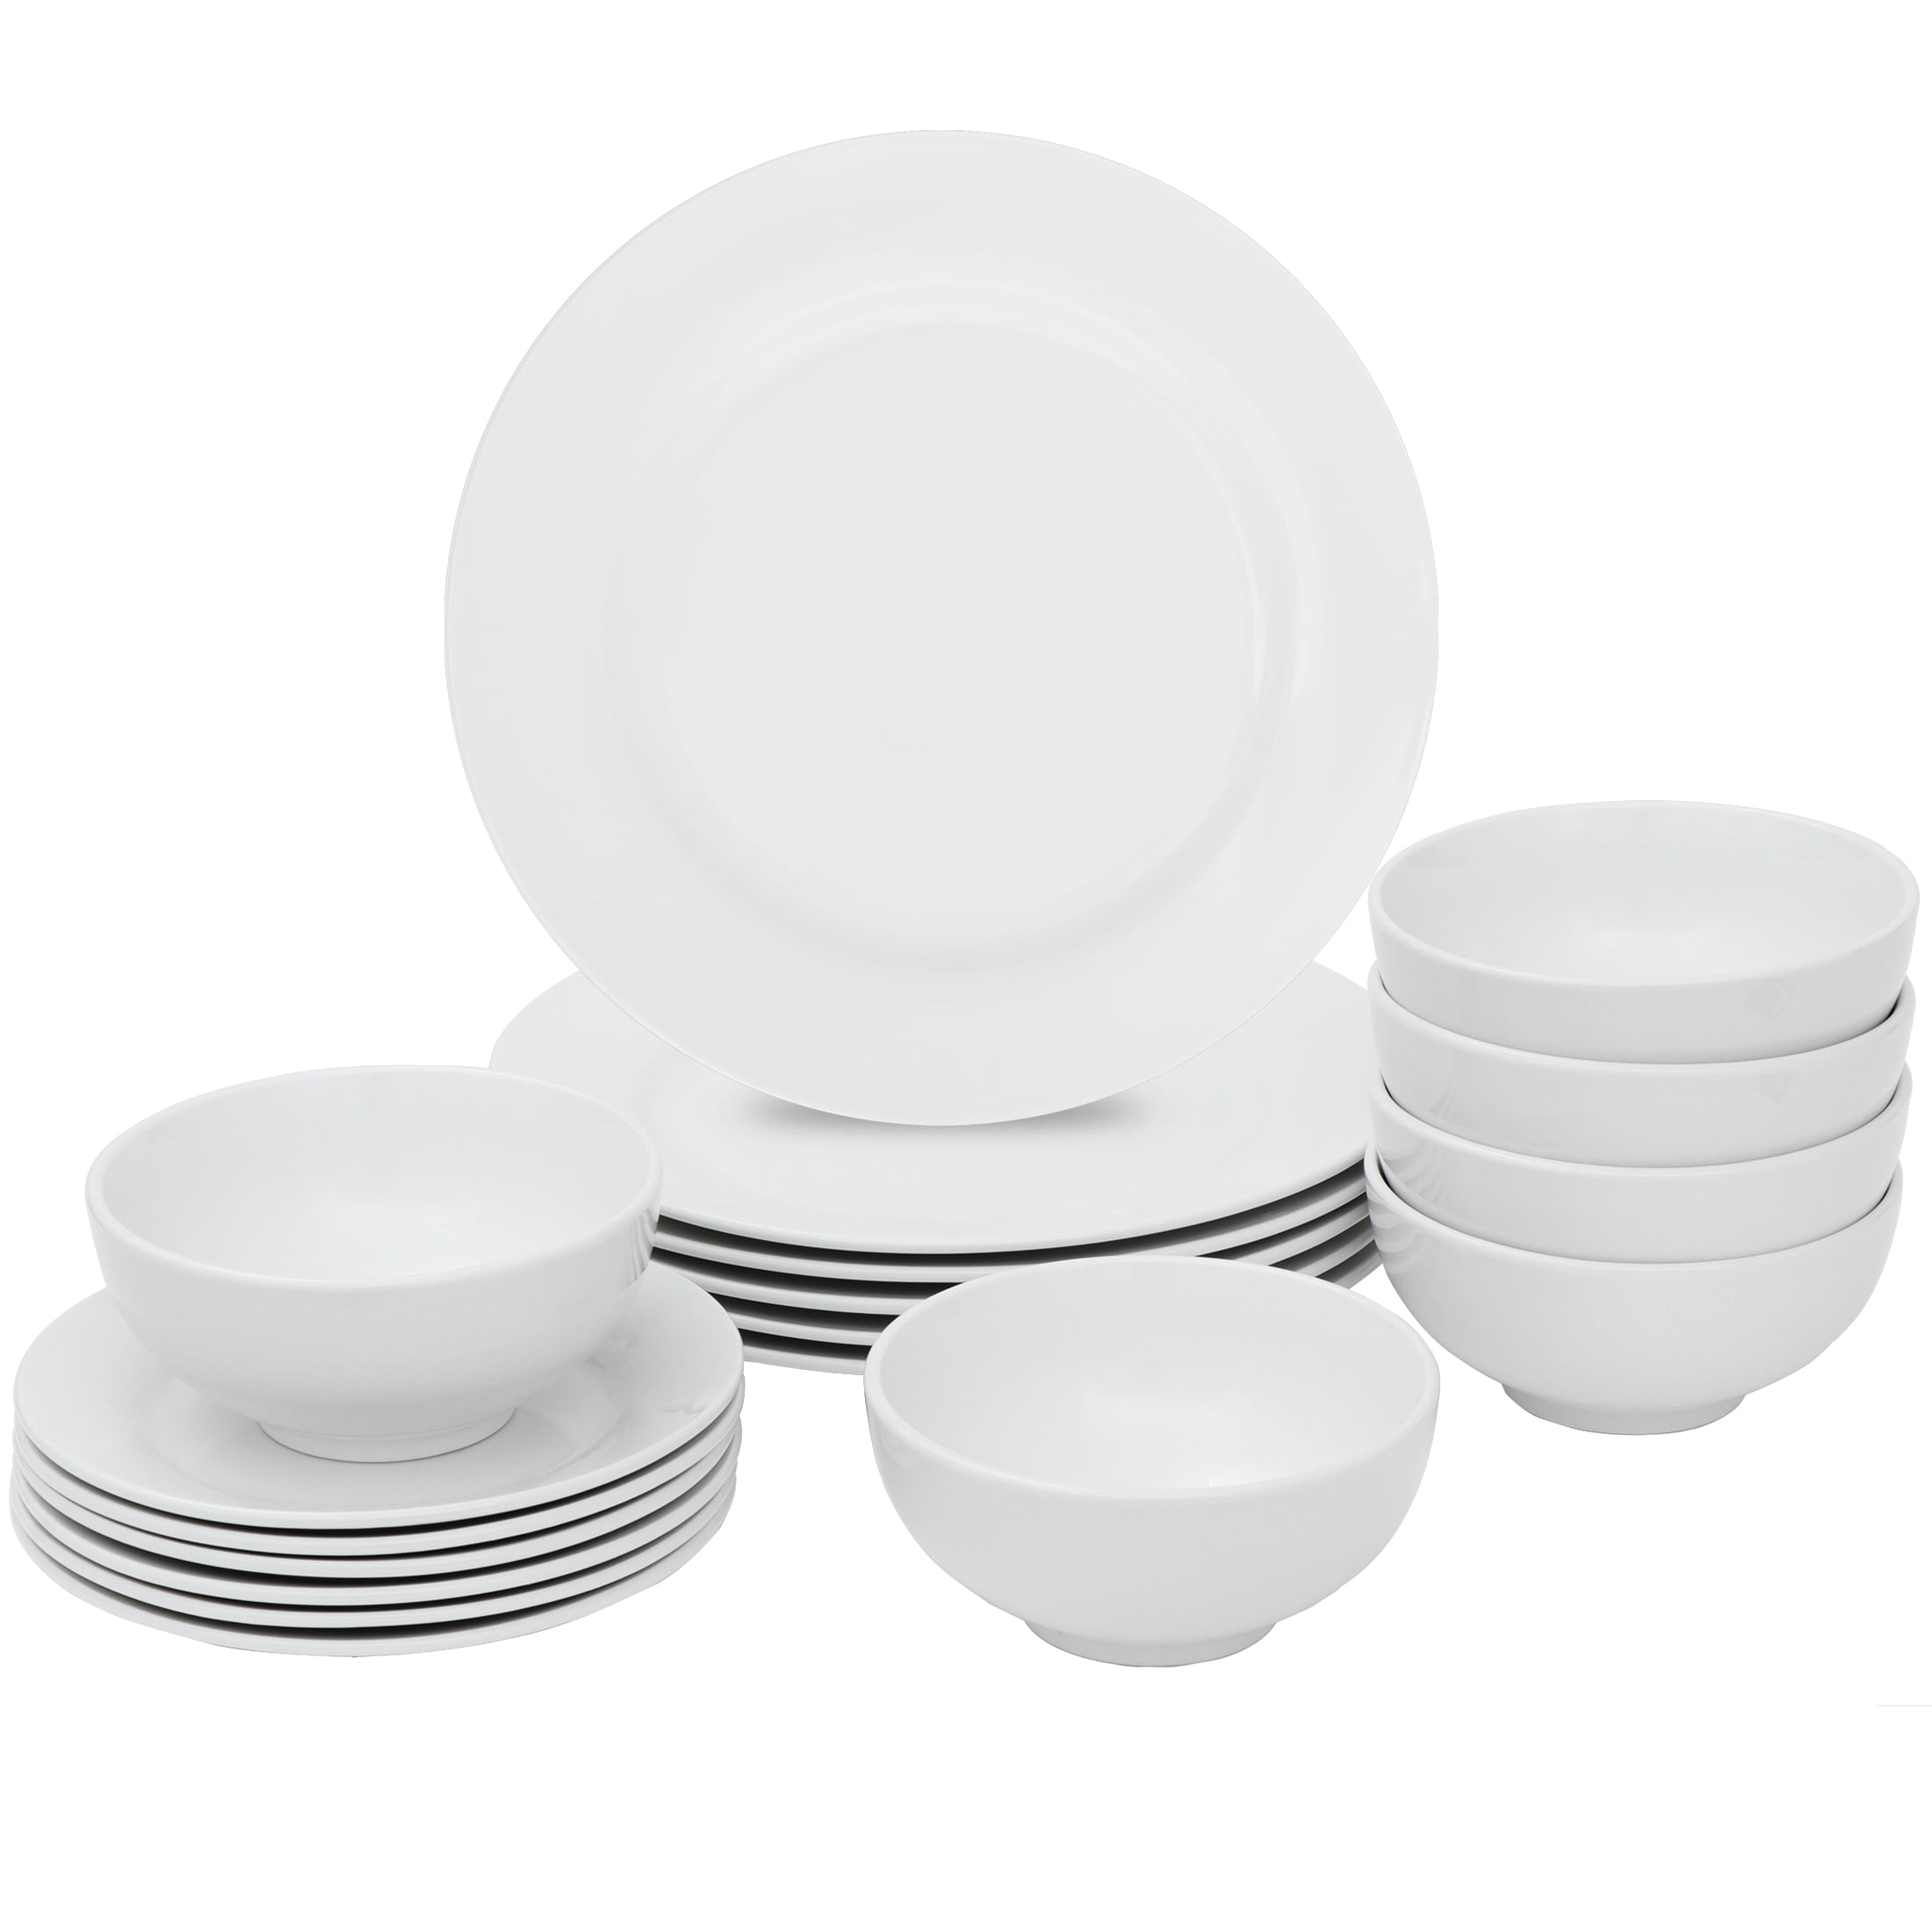 White dinner service sets